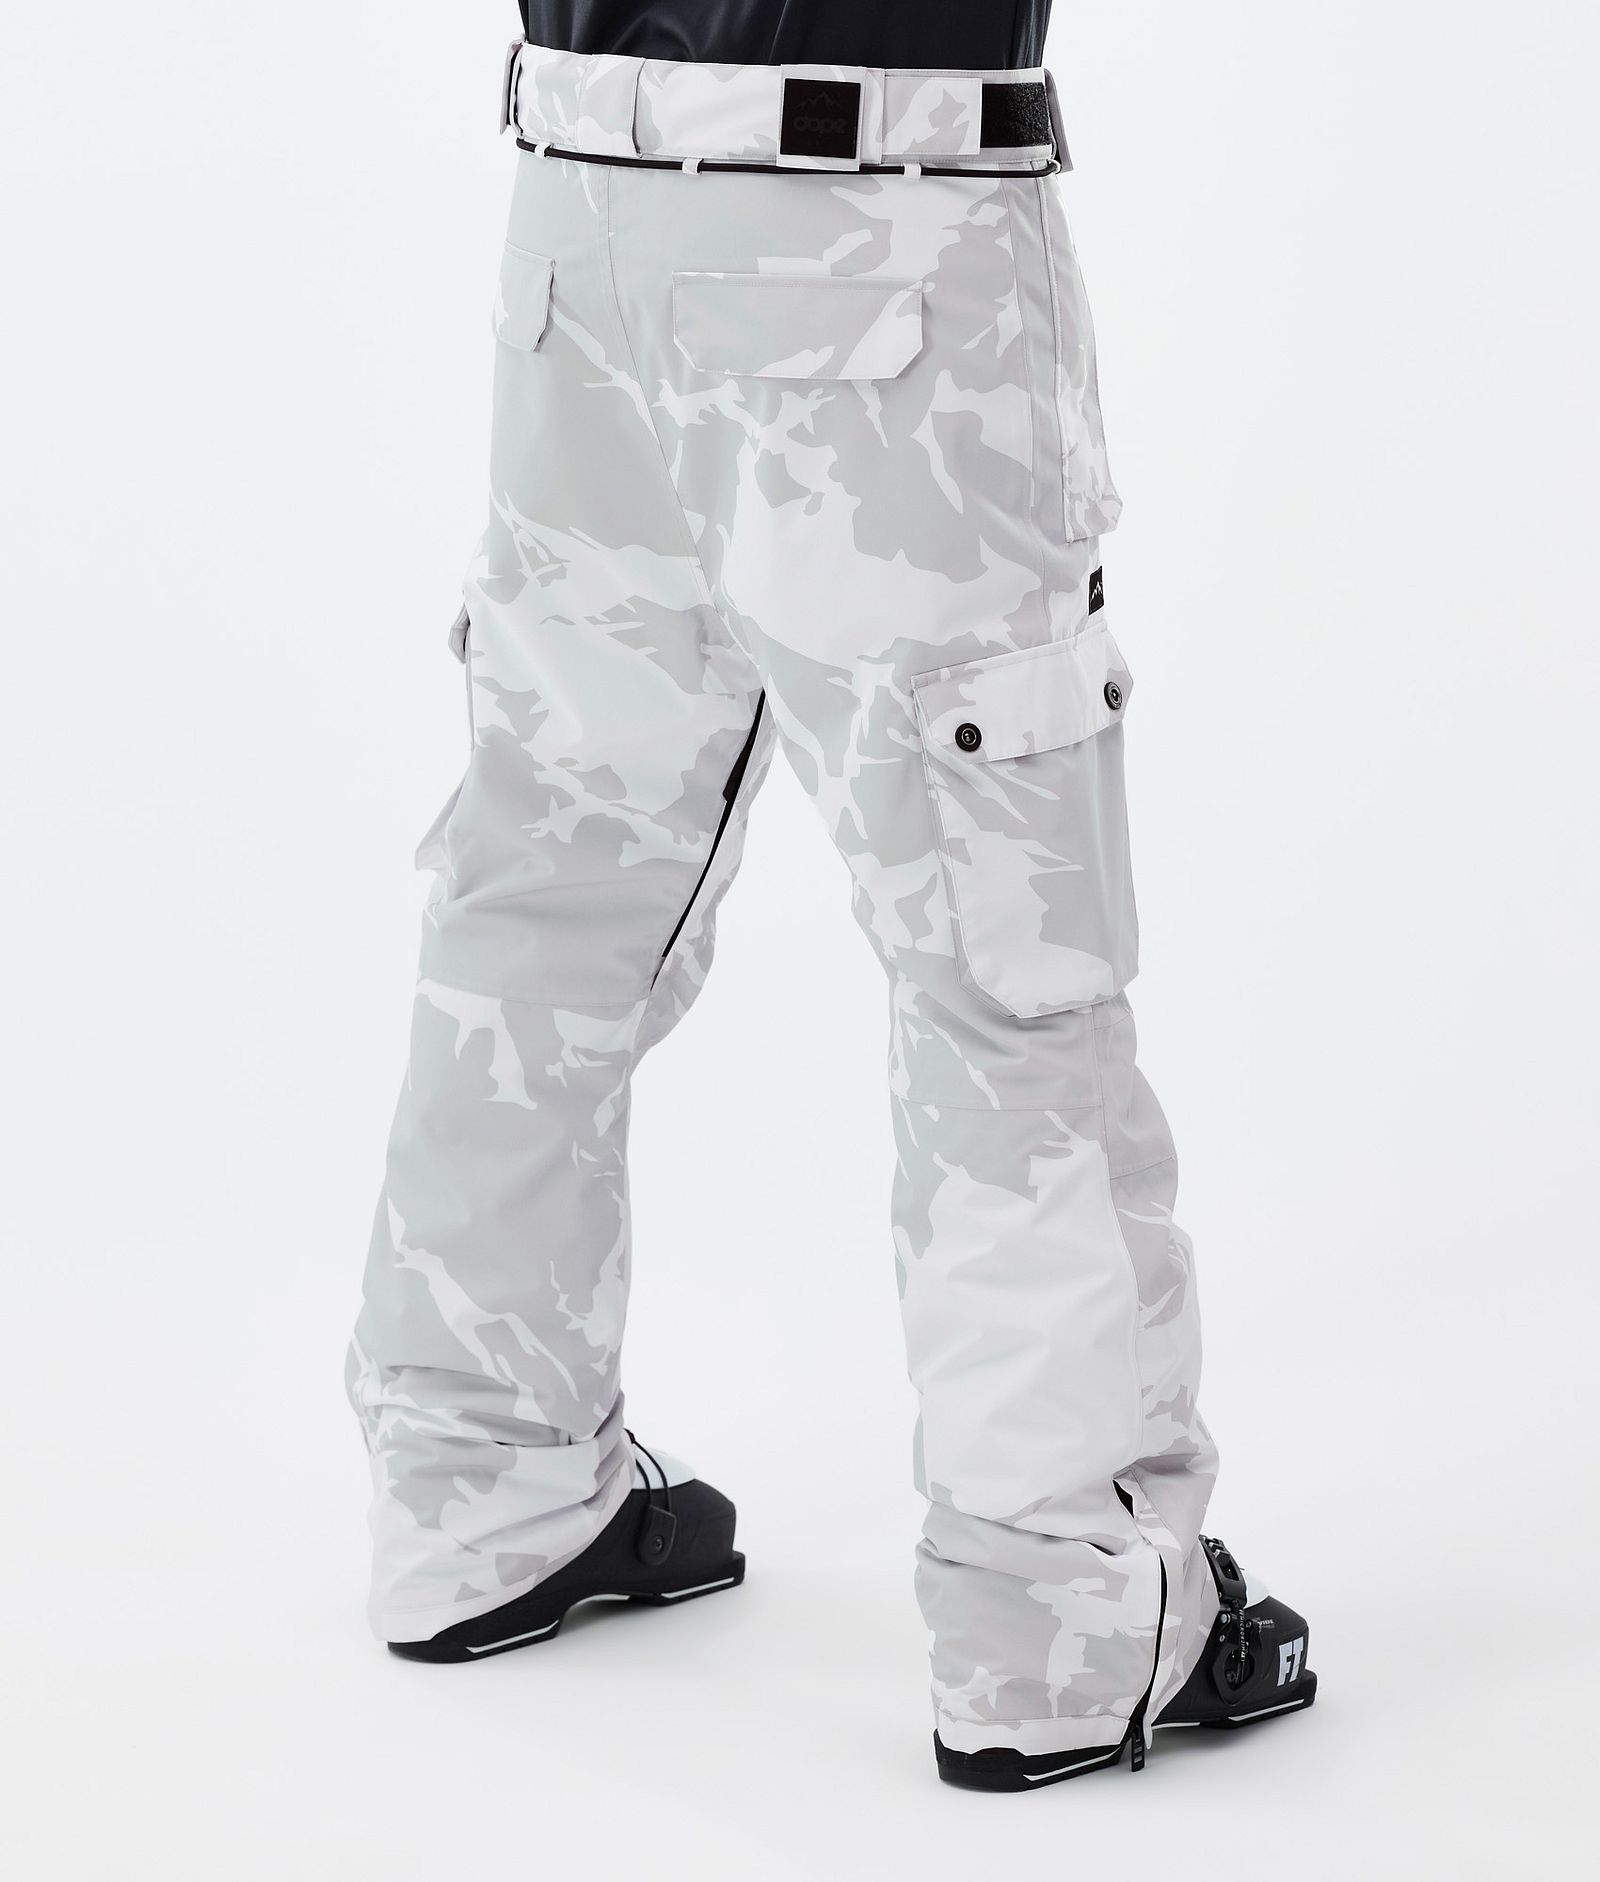 Iconic Lyžařské Kalhoty Pánské Grey Camo